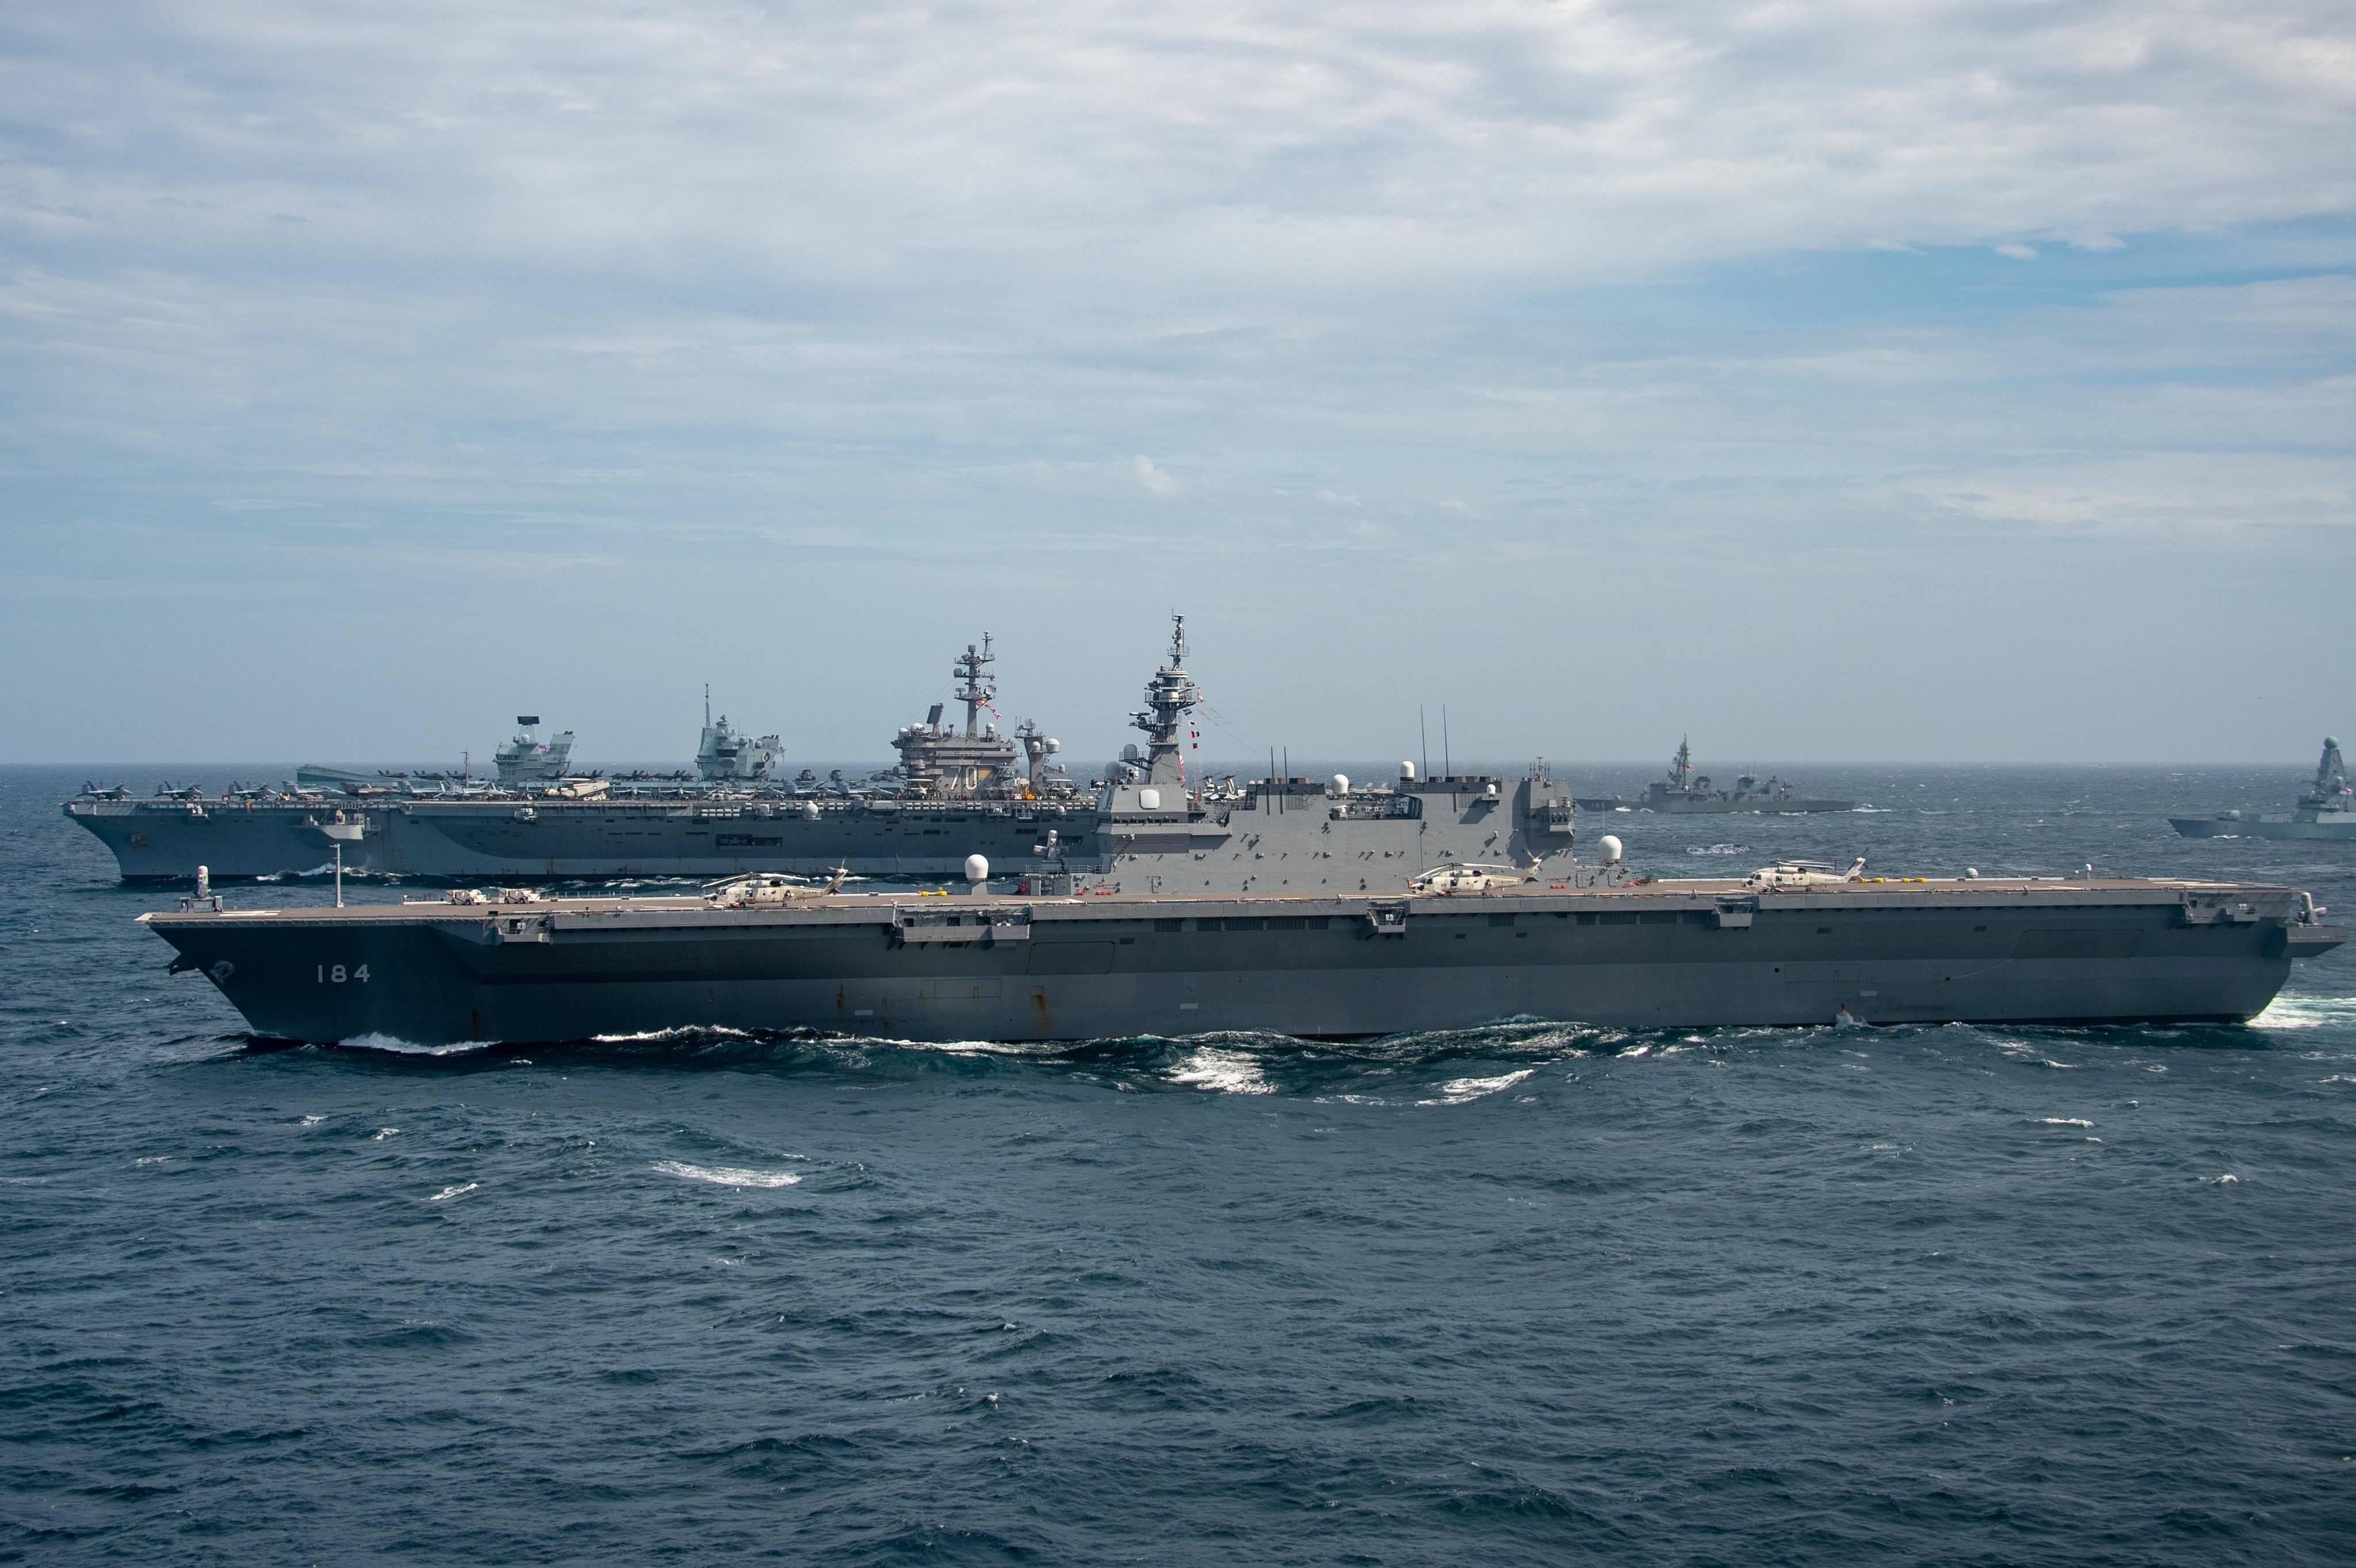 日本海上自卫队加贺号(近),美军卡尔·文森号航母(中)及英国海军